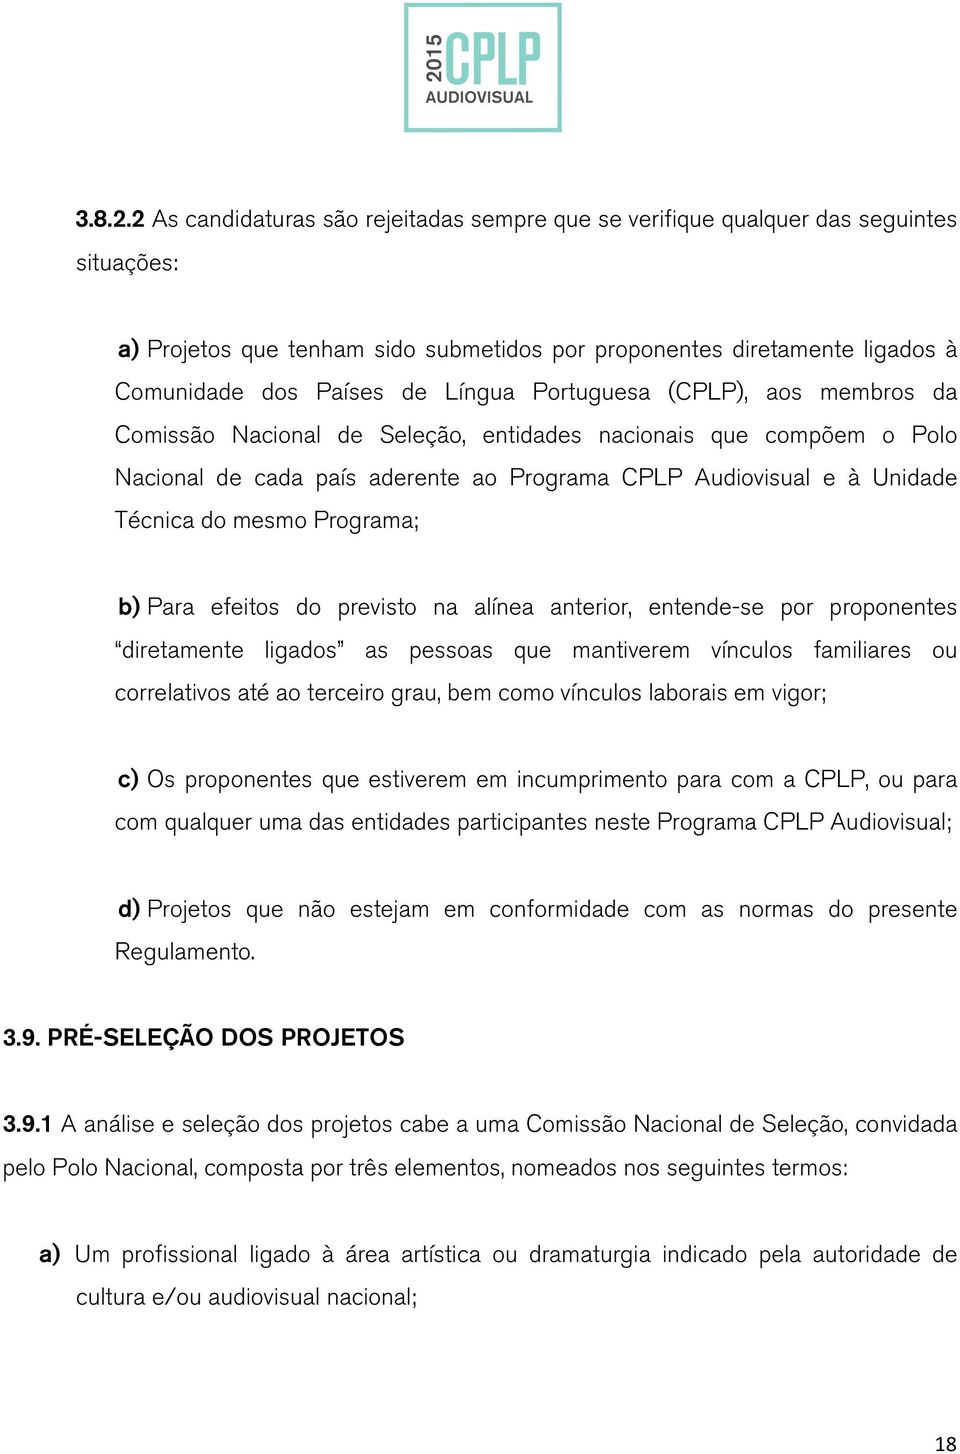 Portuguesa (CPLP), aos membros da Comissão Nacional de Seleção, entidades nacionais que compõem o Polo Nacional de cada país aderente ao Programa CPLP Audiovisual e à Unidade Técnica do mesmo